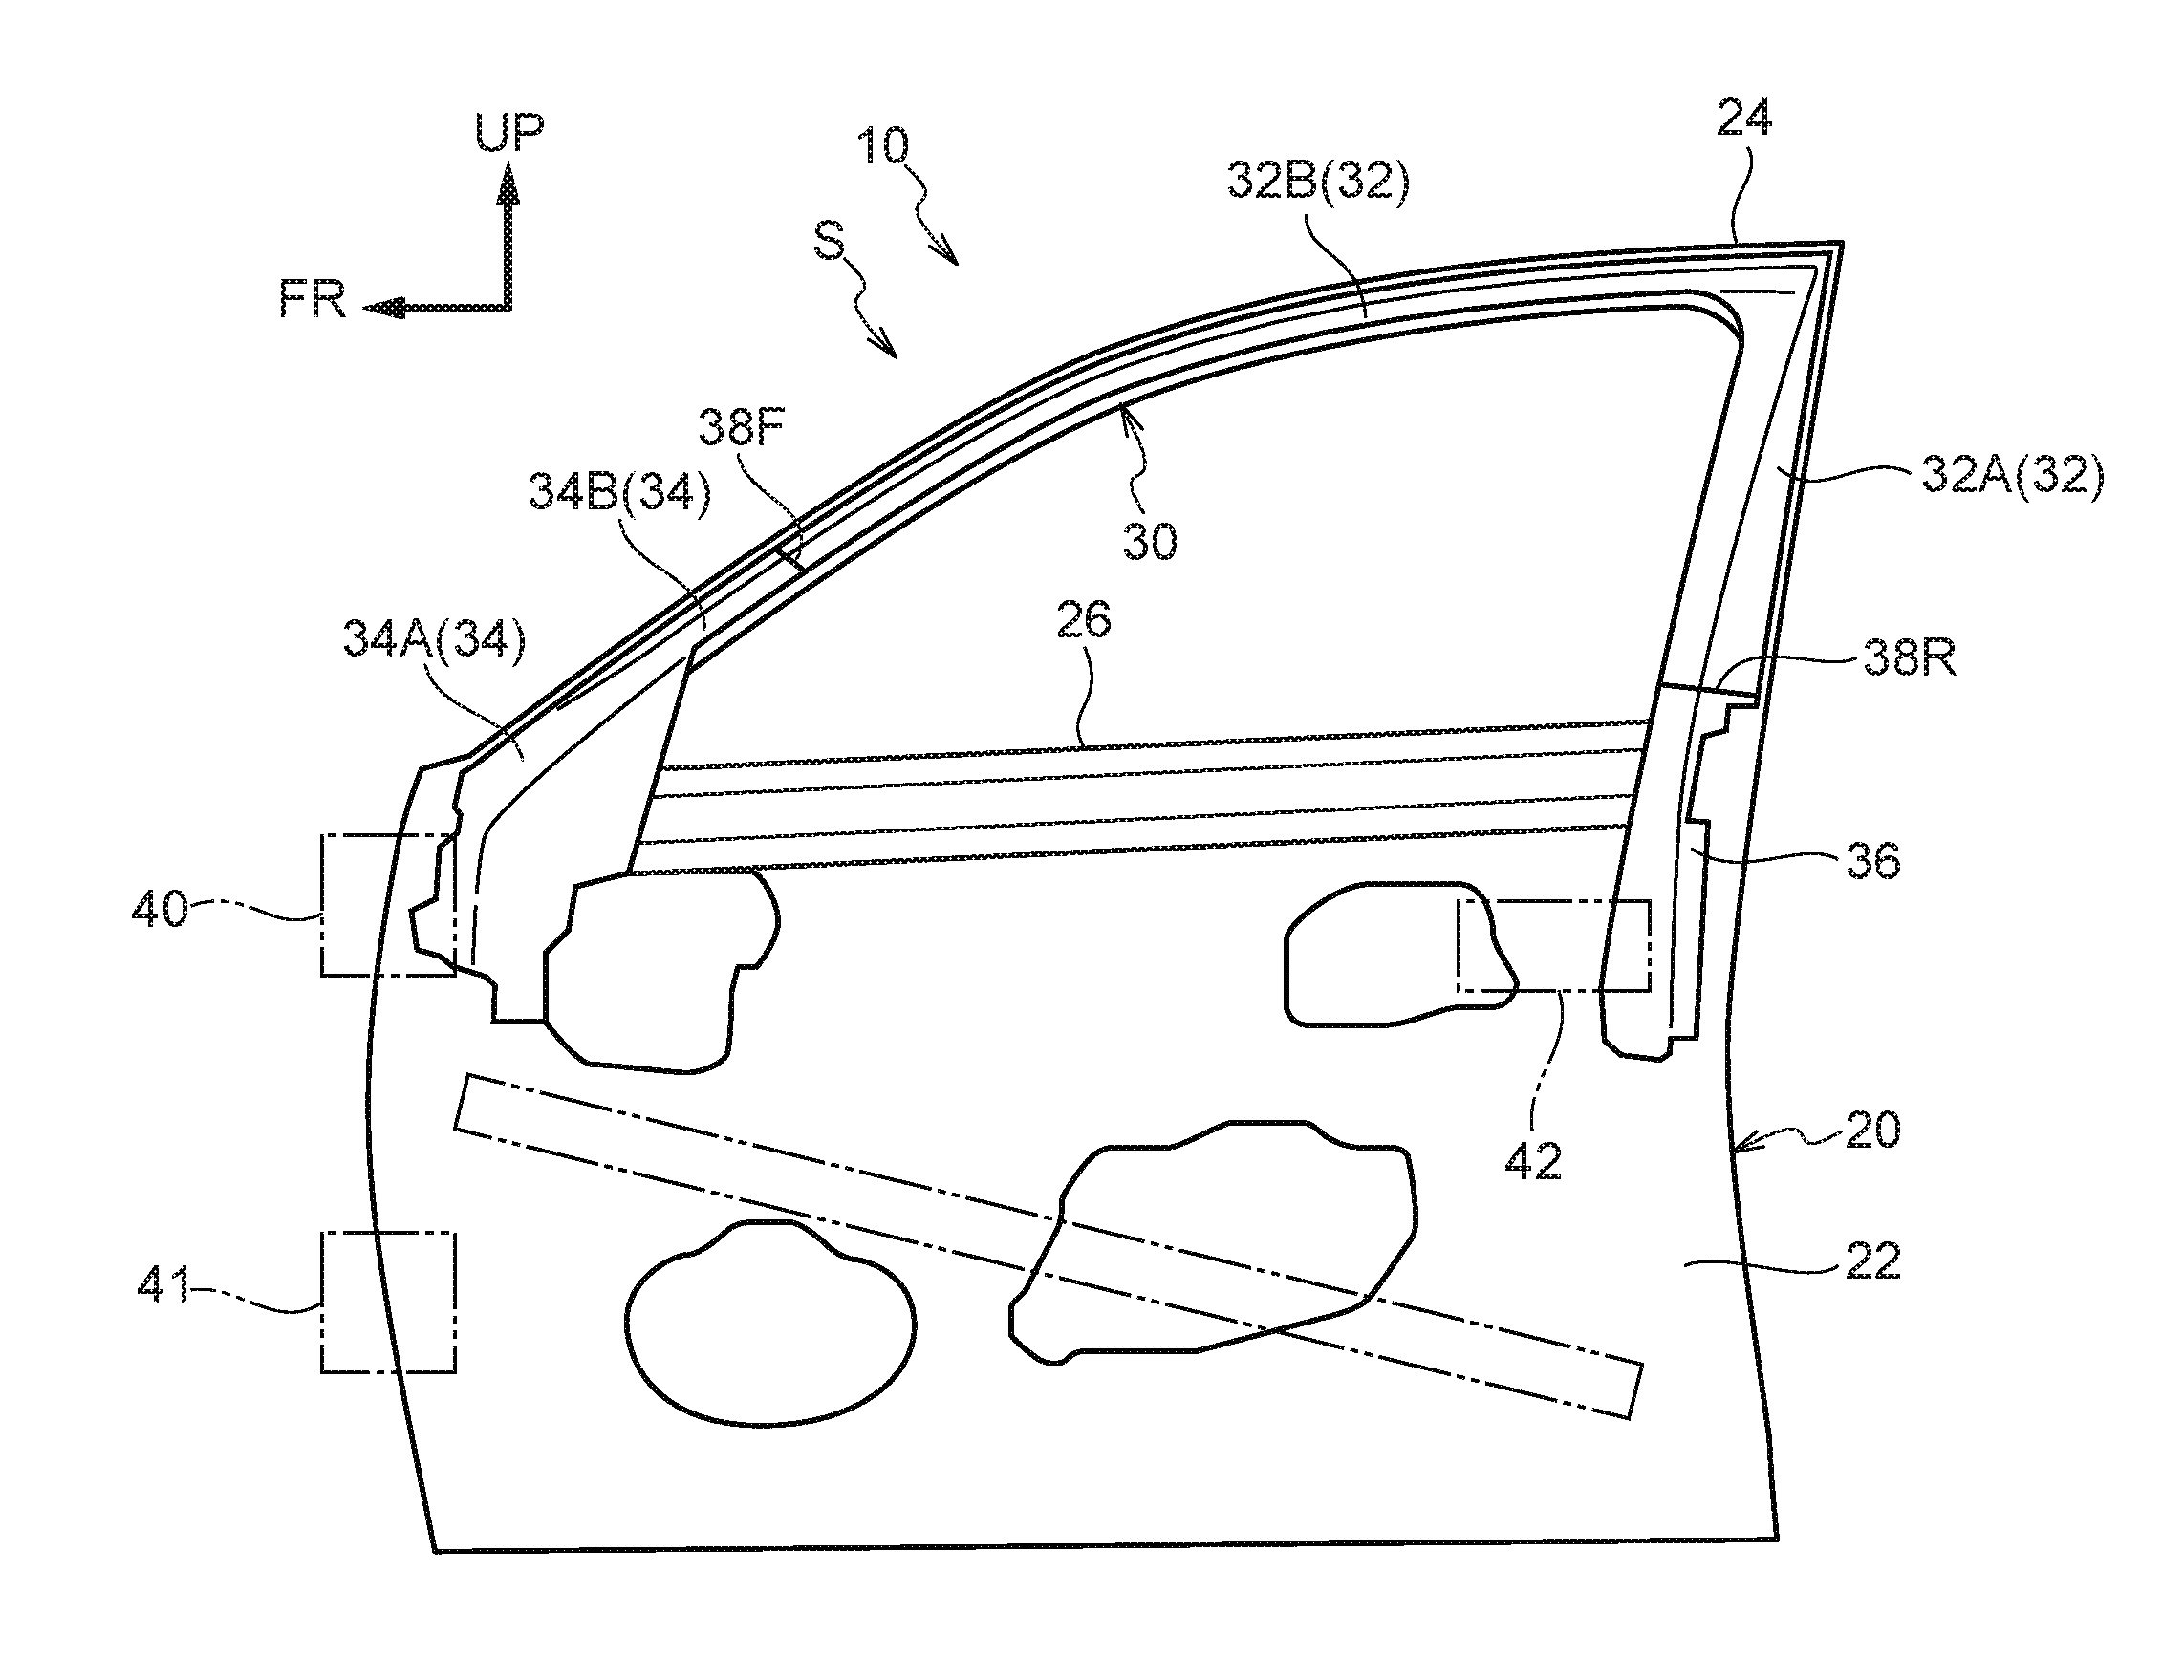 Vehicle door frame structure